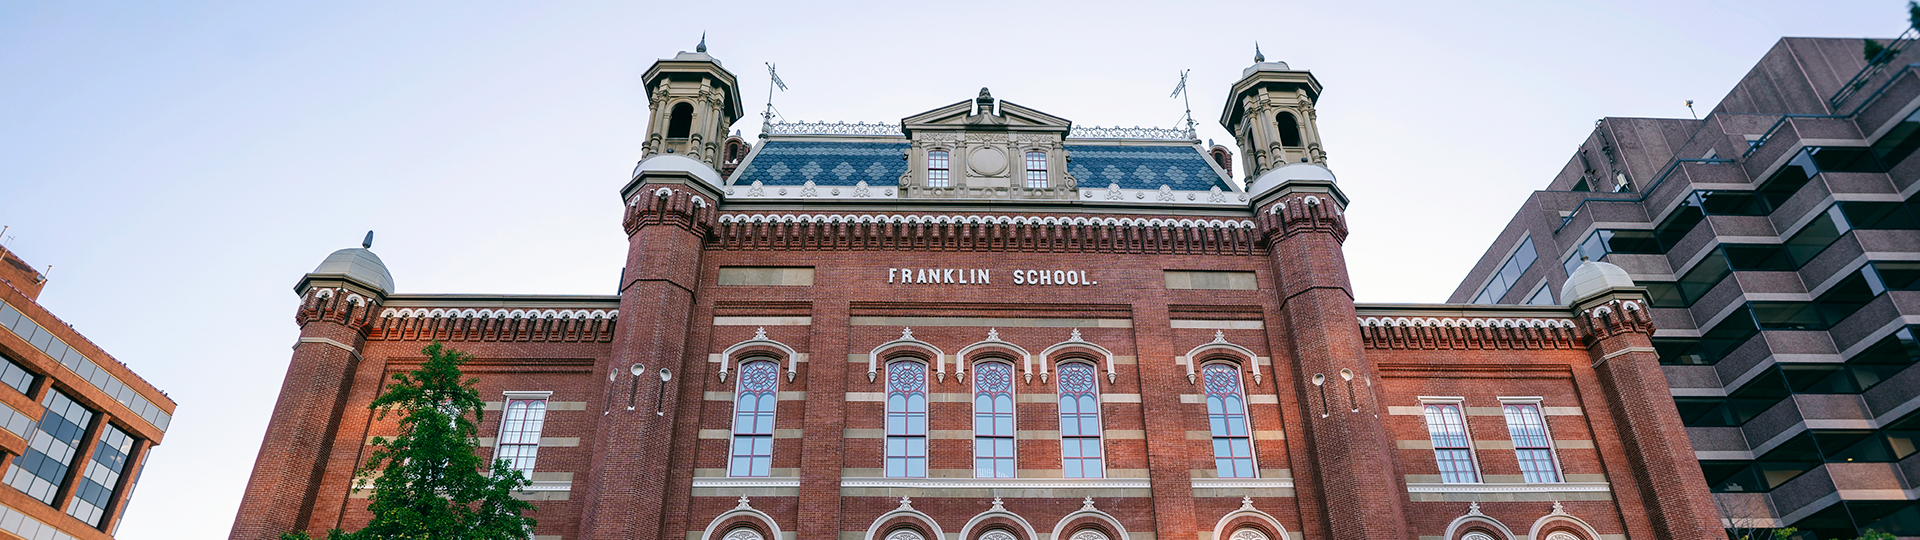 Franklin School, la maison du musée Planet Word